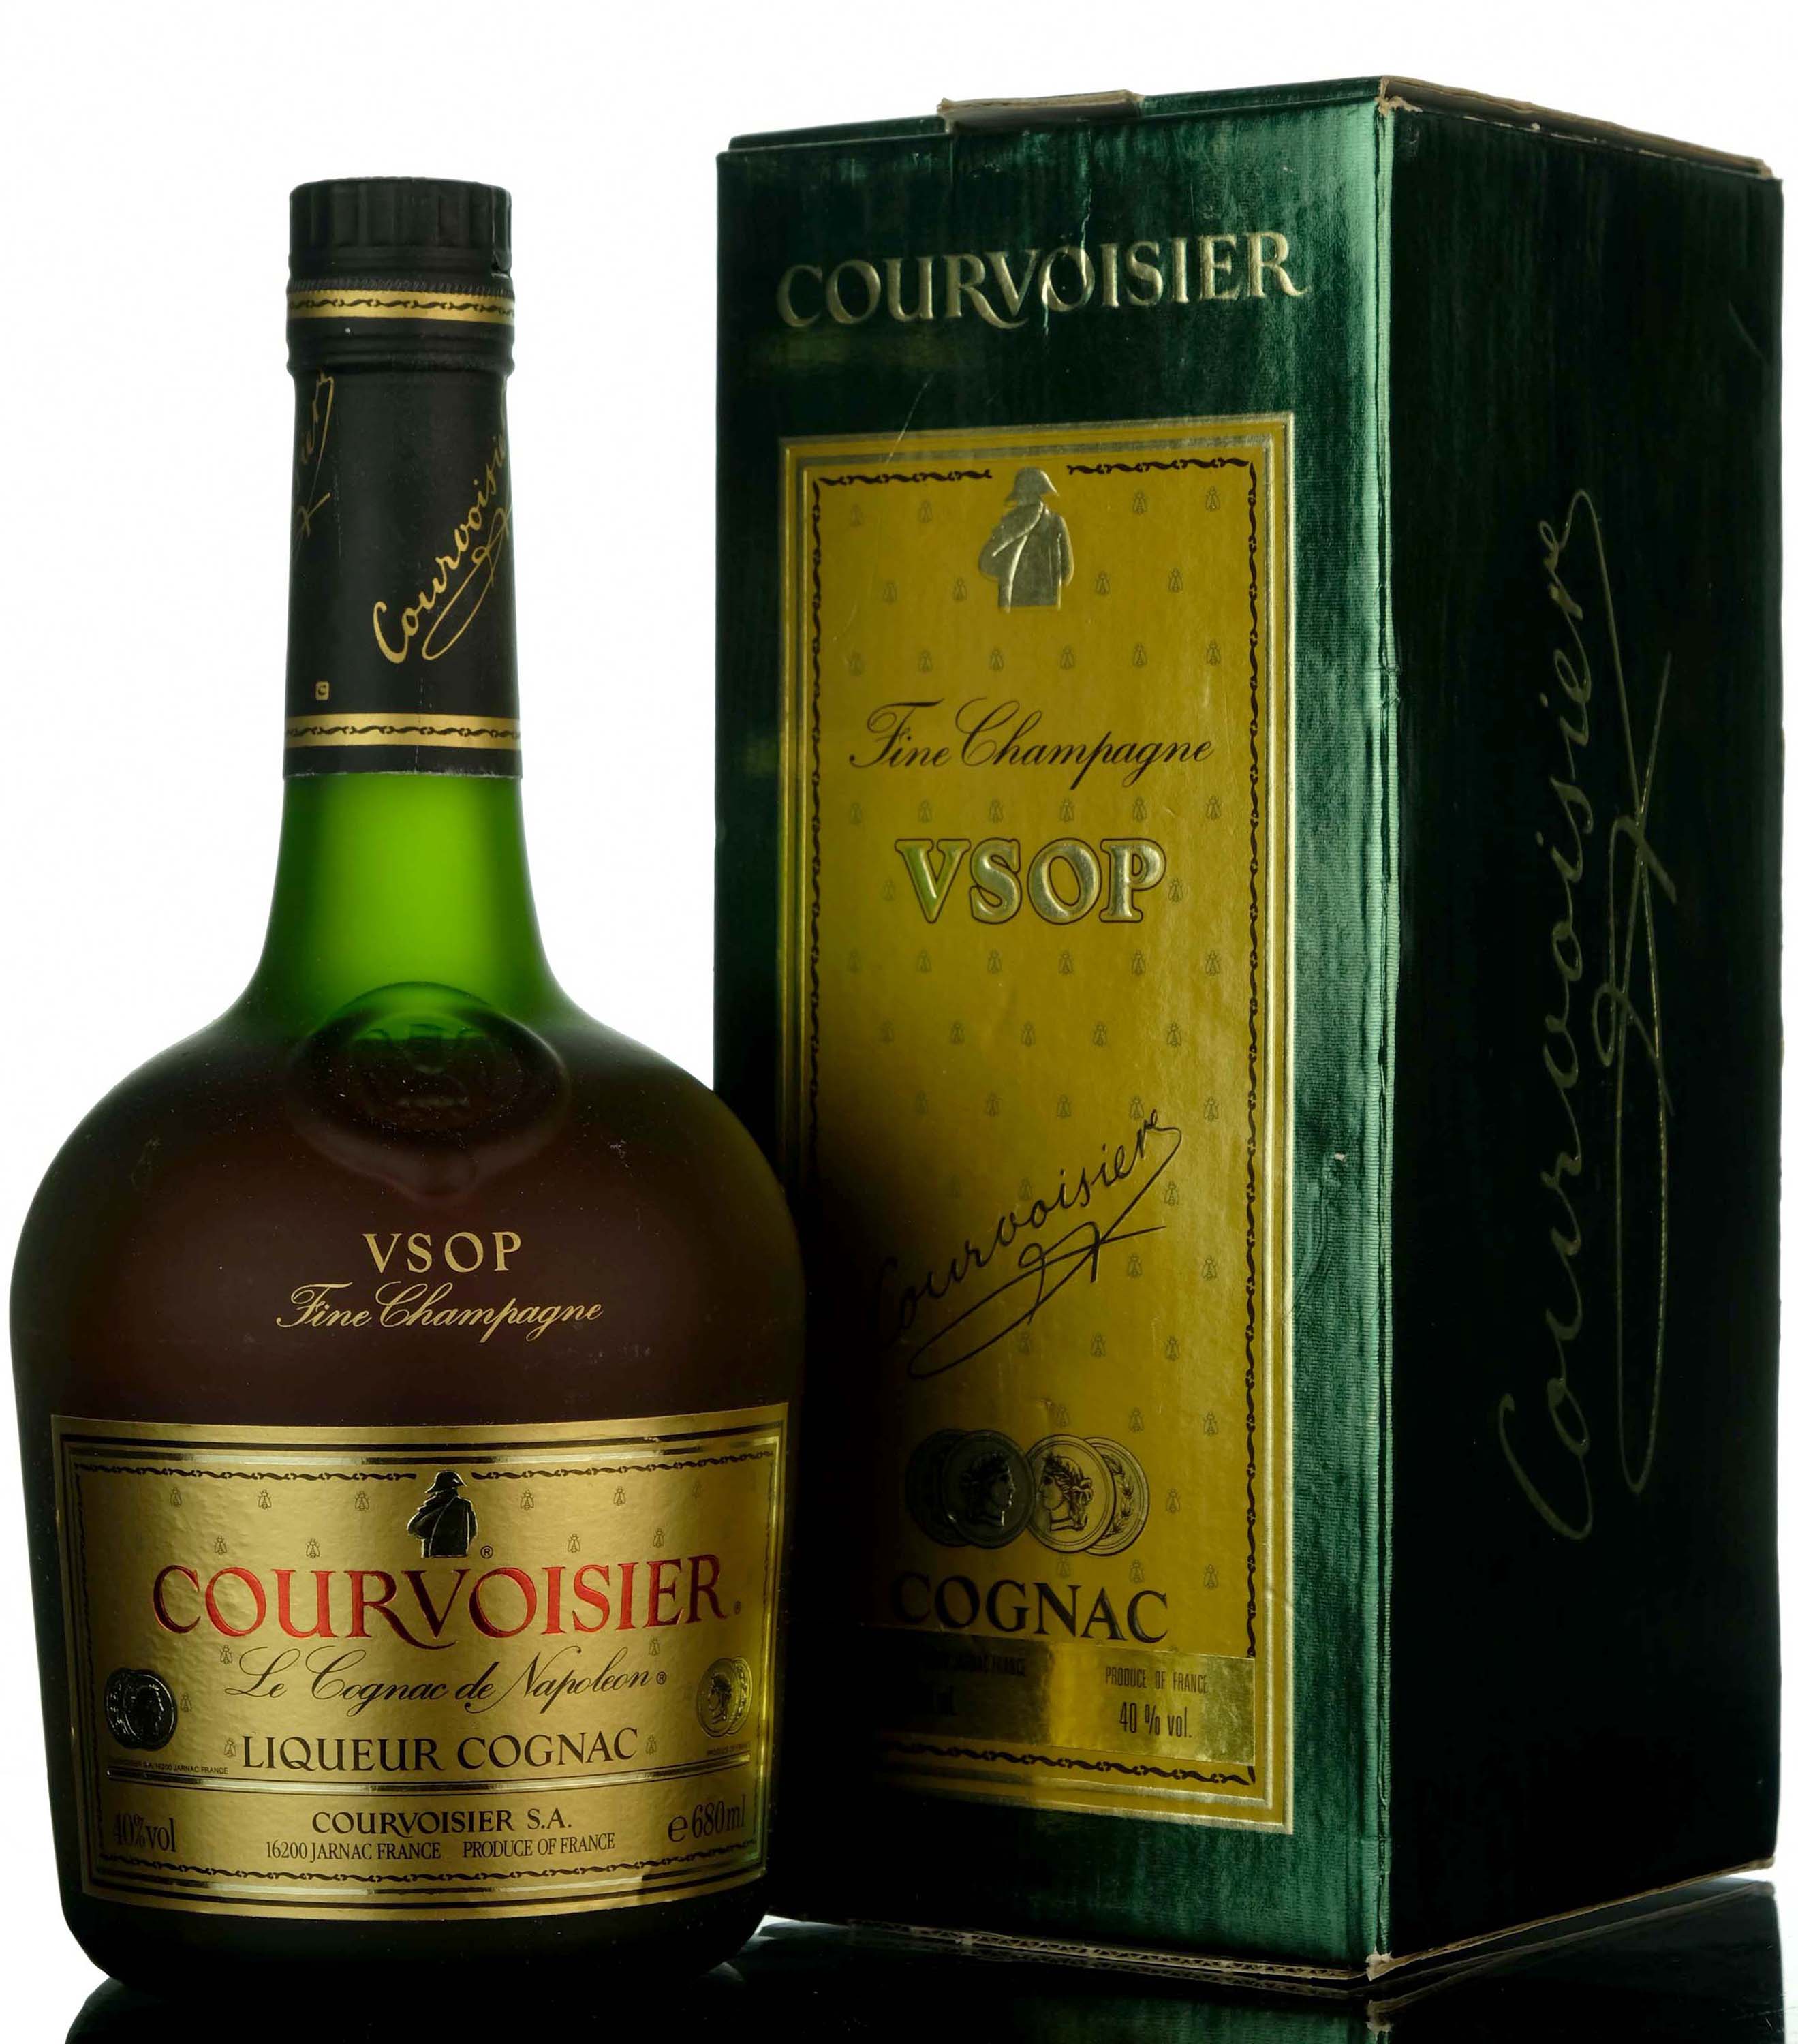 Courvoisier VSOP Fine Champagne Liqueur Cognac